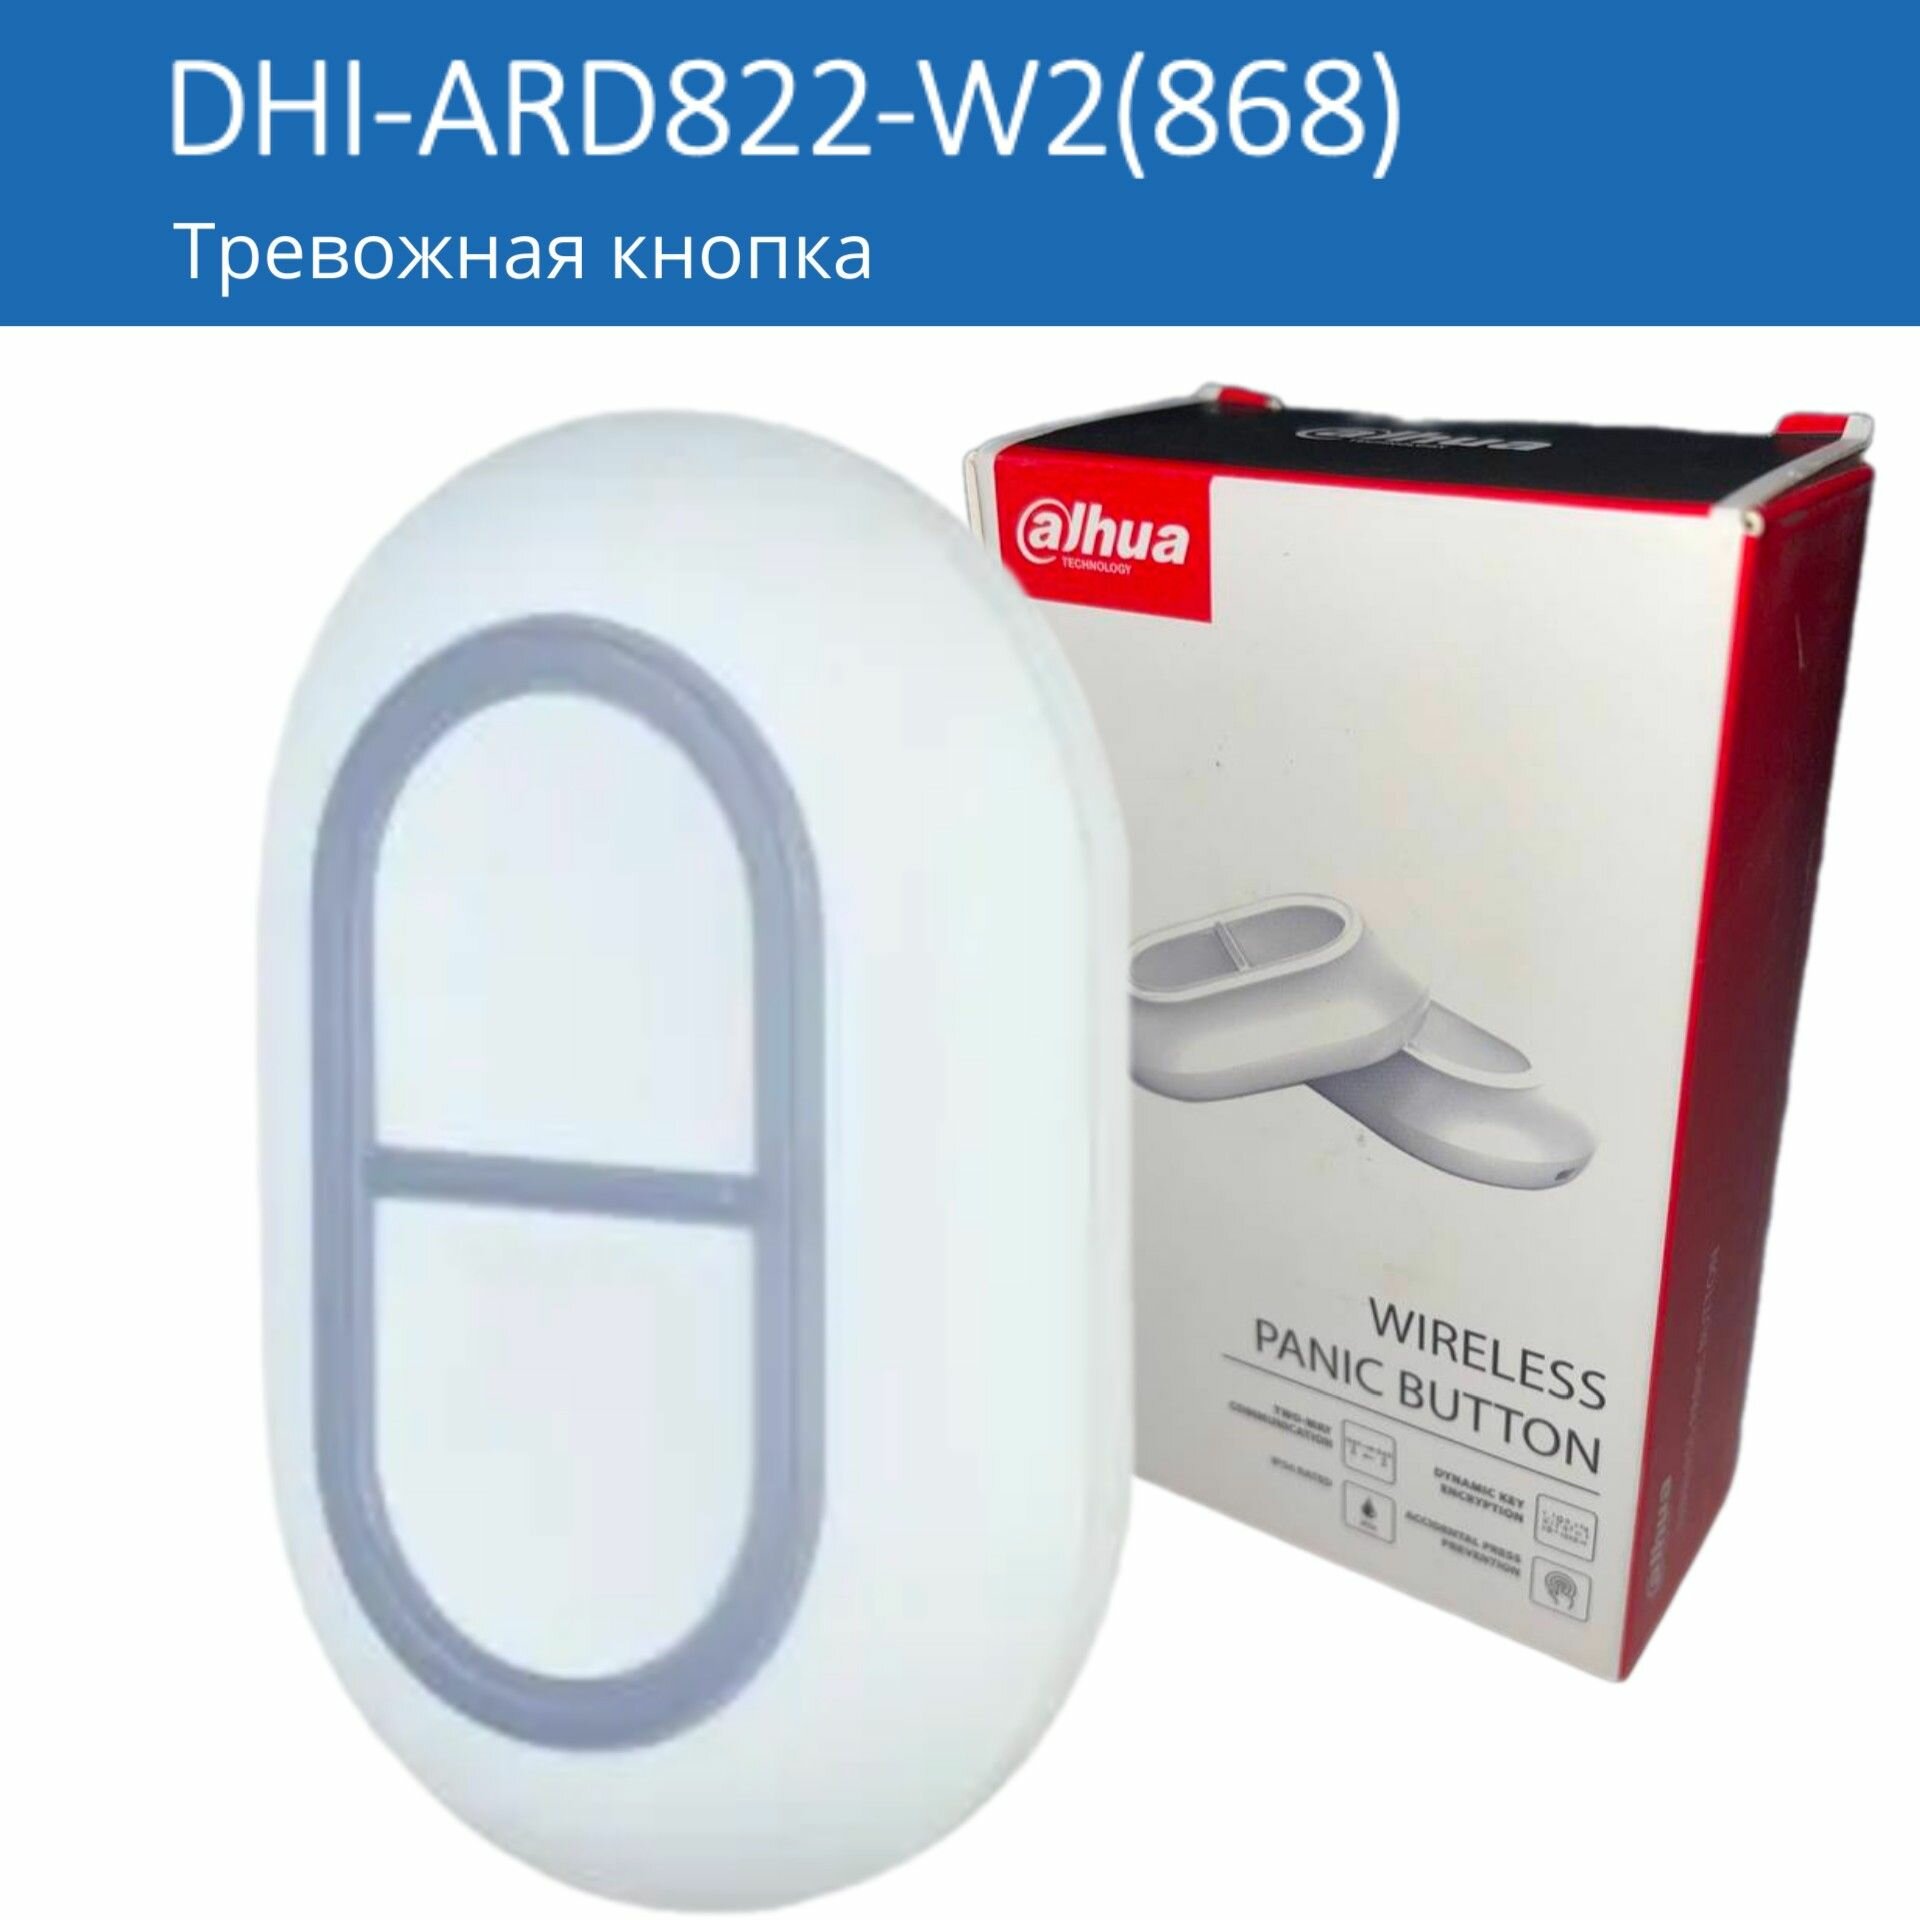 Тревожная кнопка Dahua DHI-ARD822-W2(868)